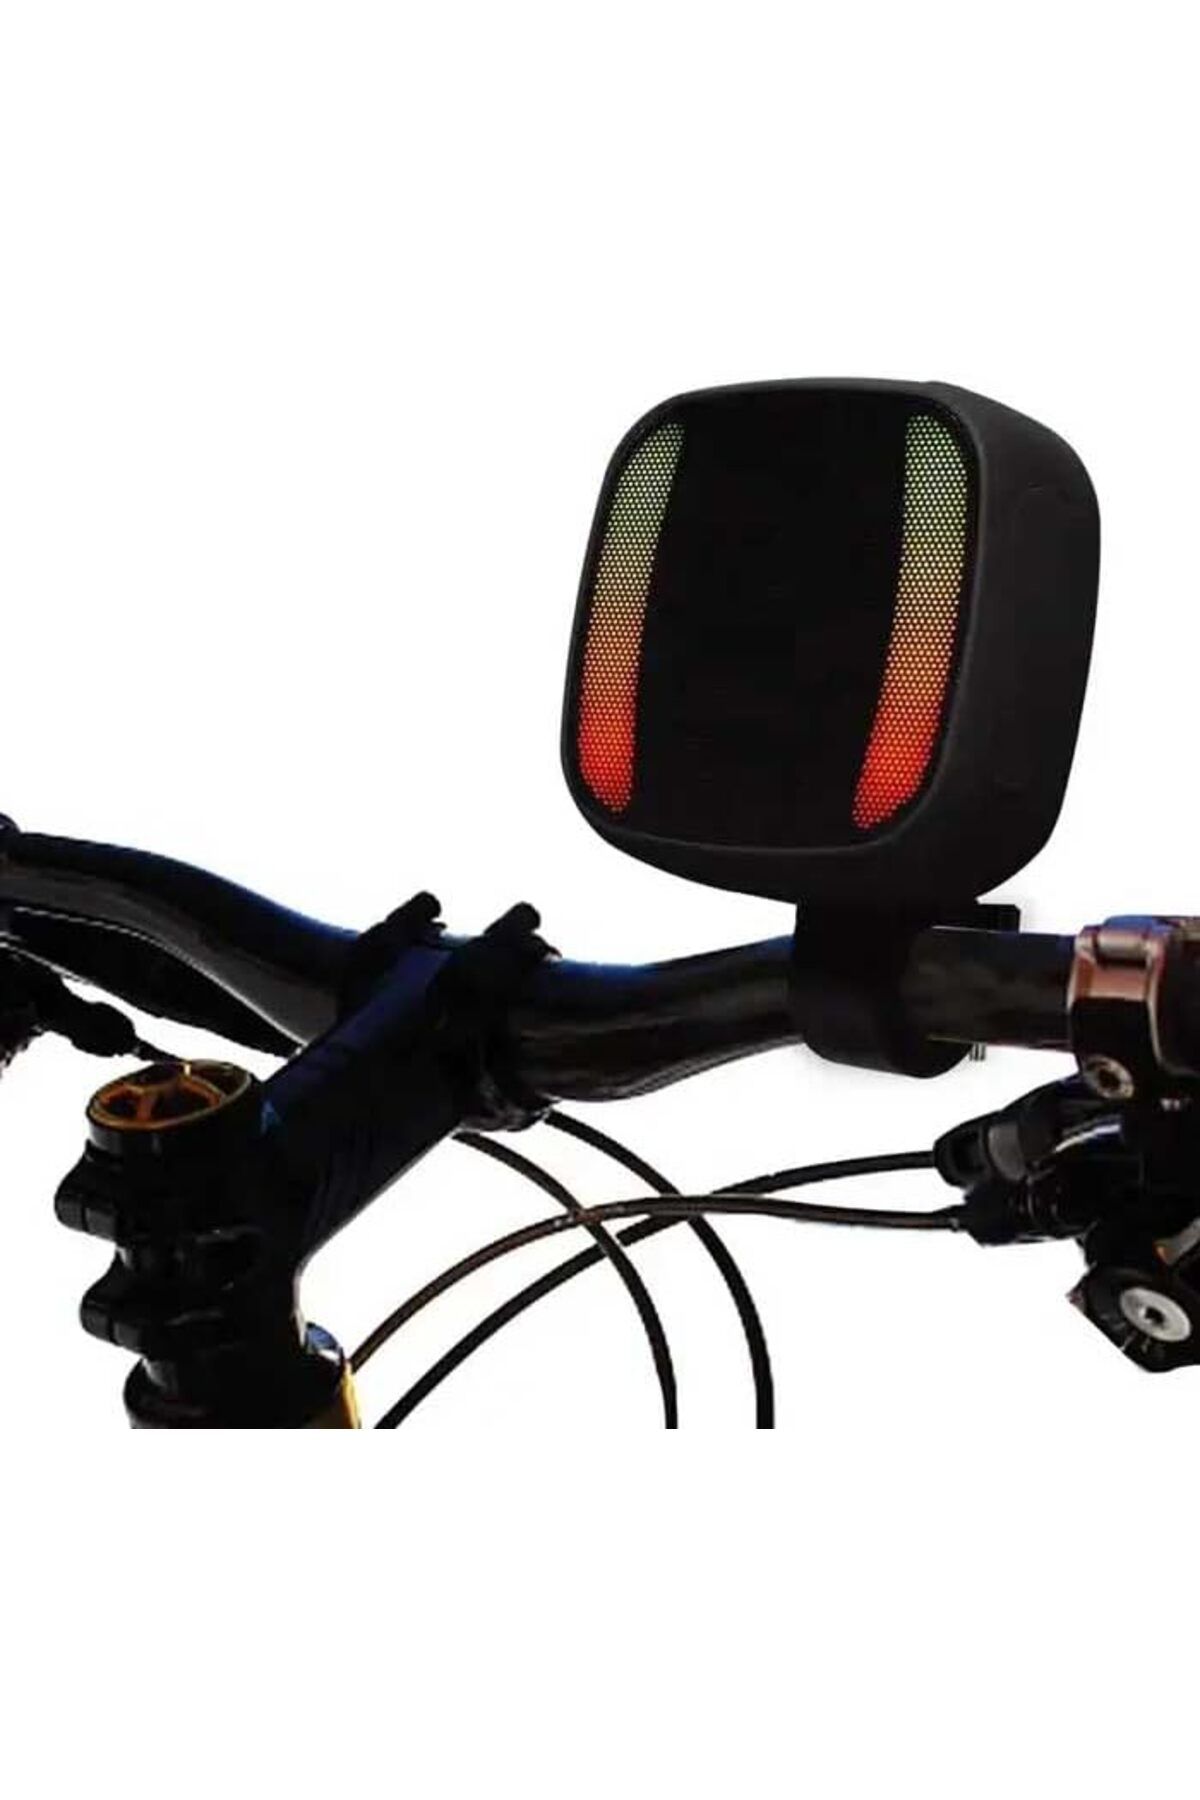 Deppo Trend Taşınabilir Bisiklet/Motosiklet Uyumlu Gidona Takılan Micro SD/USB Girişli Şarjlı Işıklı Hoparlör